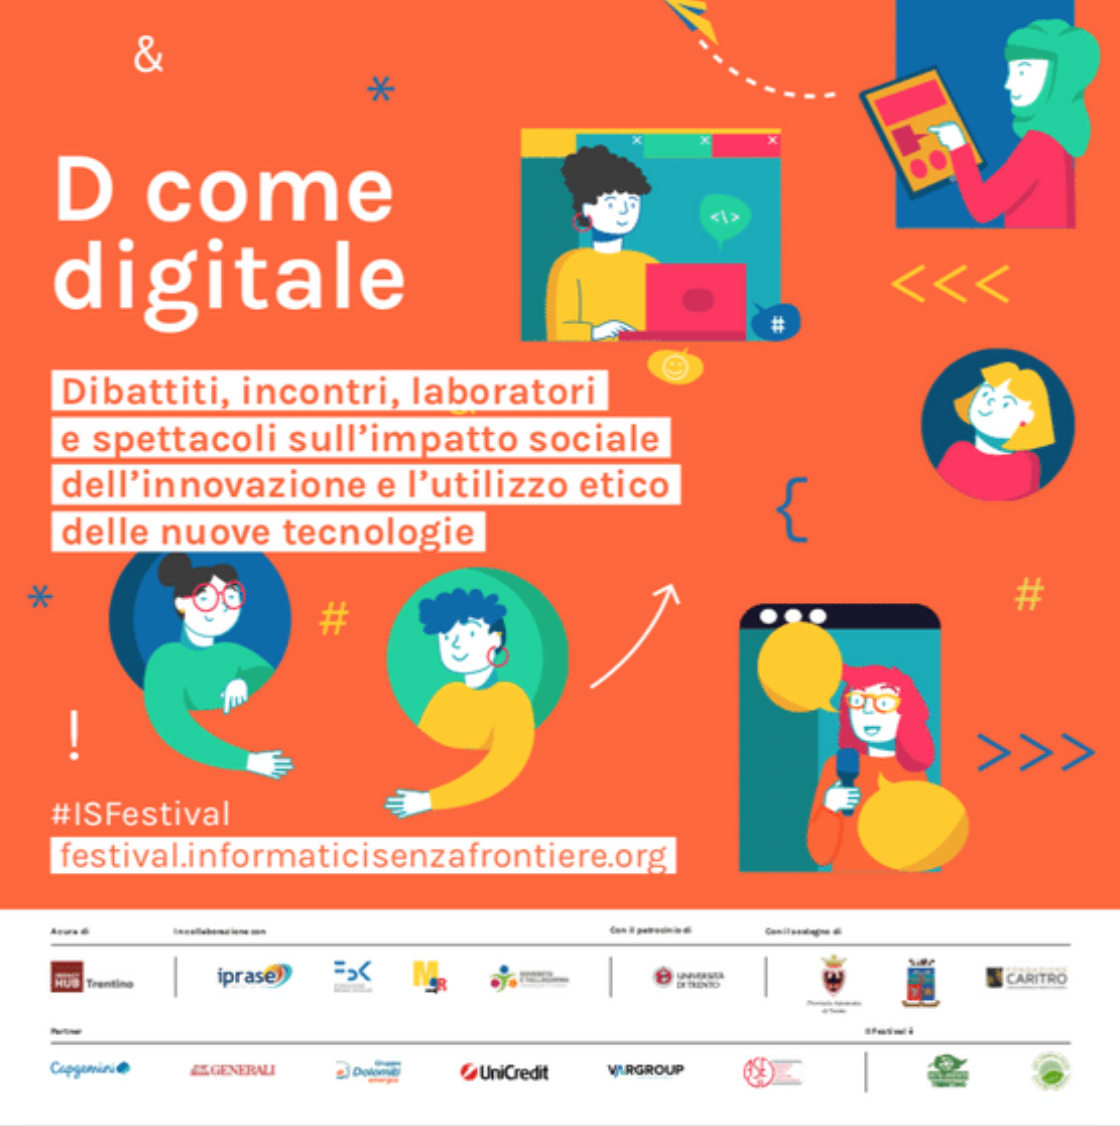 Festival Informatici Senza Frontiere 2021 - D come Digitale: dibattiti, incontri, laboratori e spettacoli sull'impatto sociale dell'innovazione e l'utilizzo etico delle nuove tecnologie